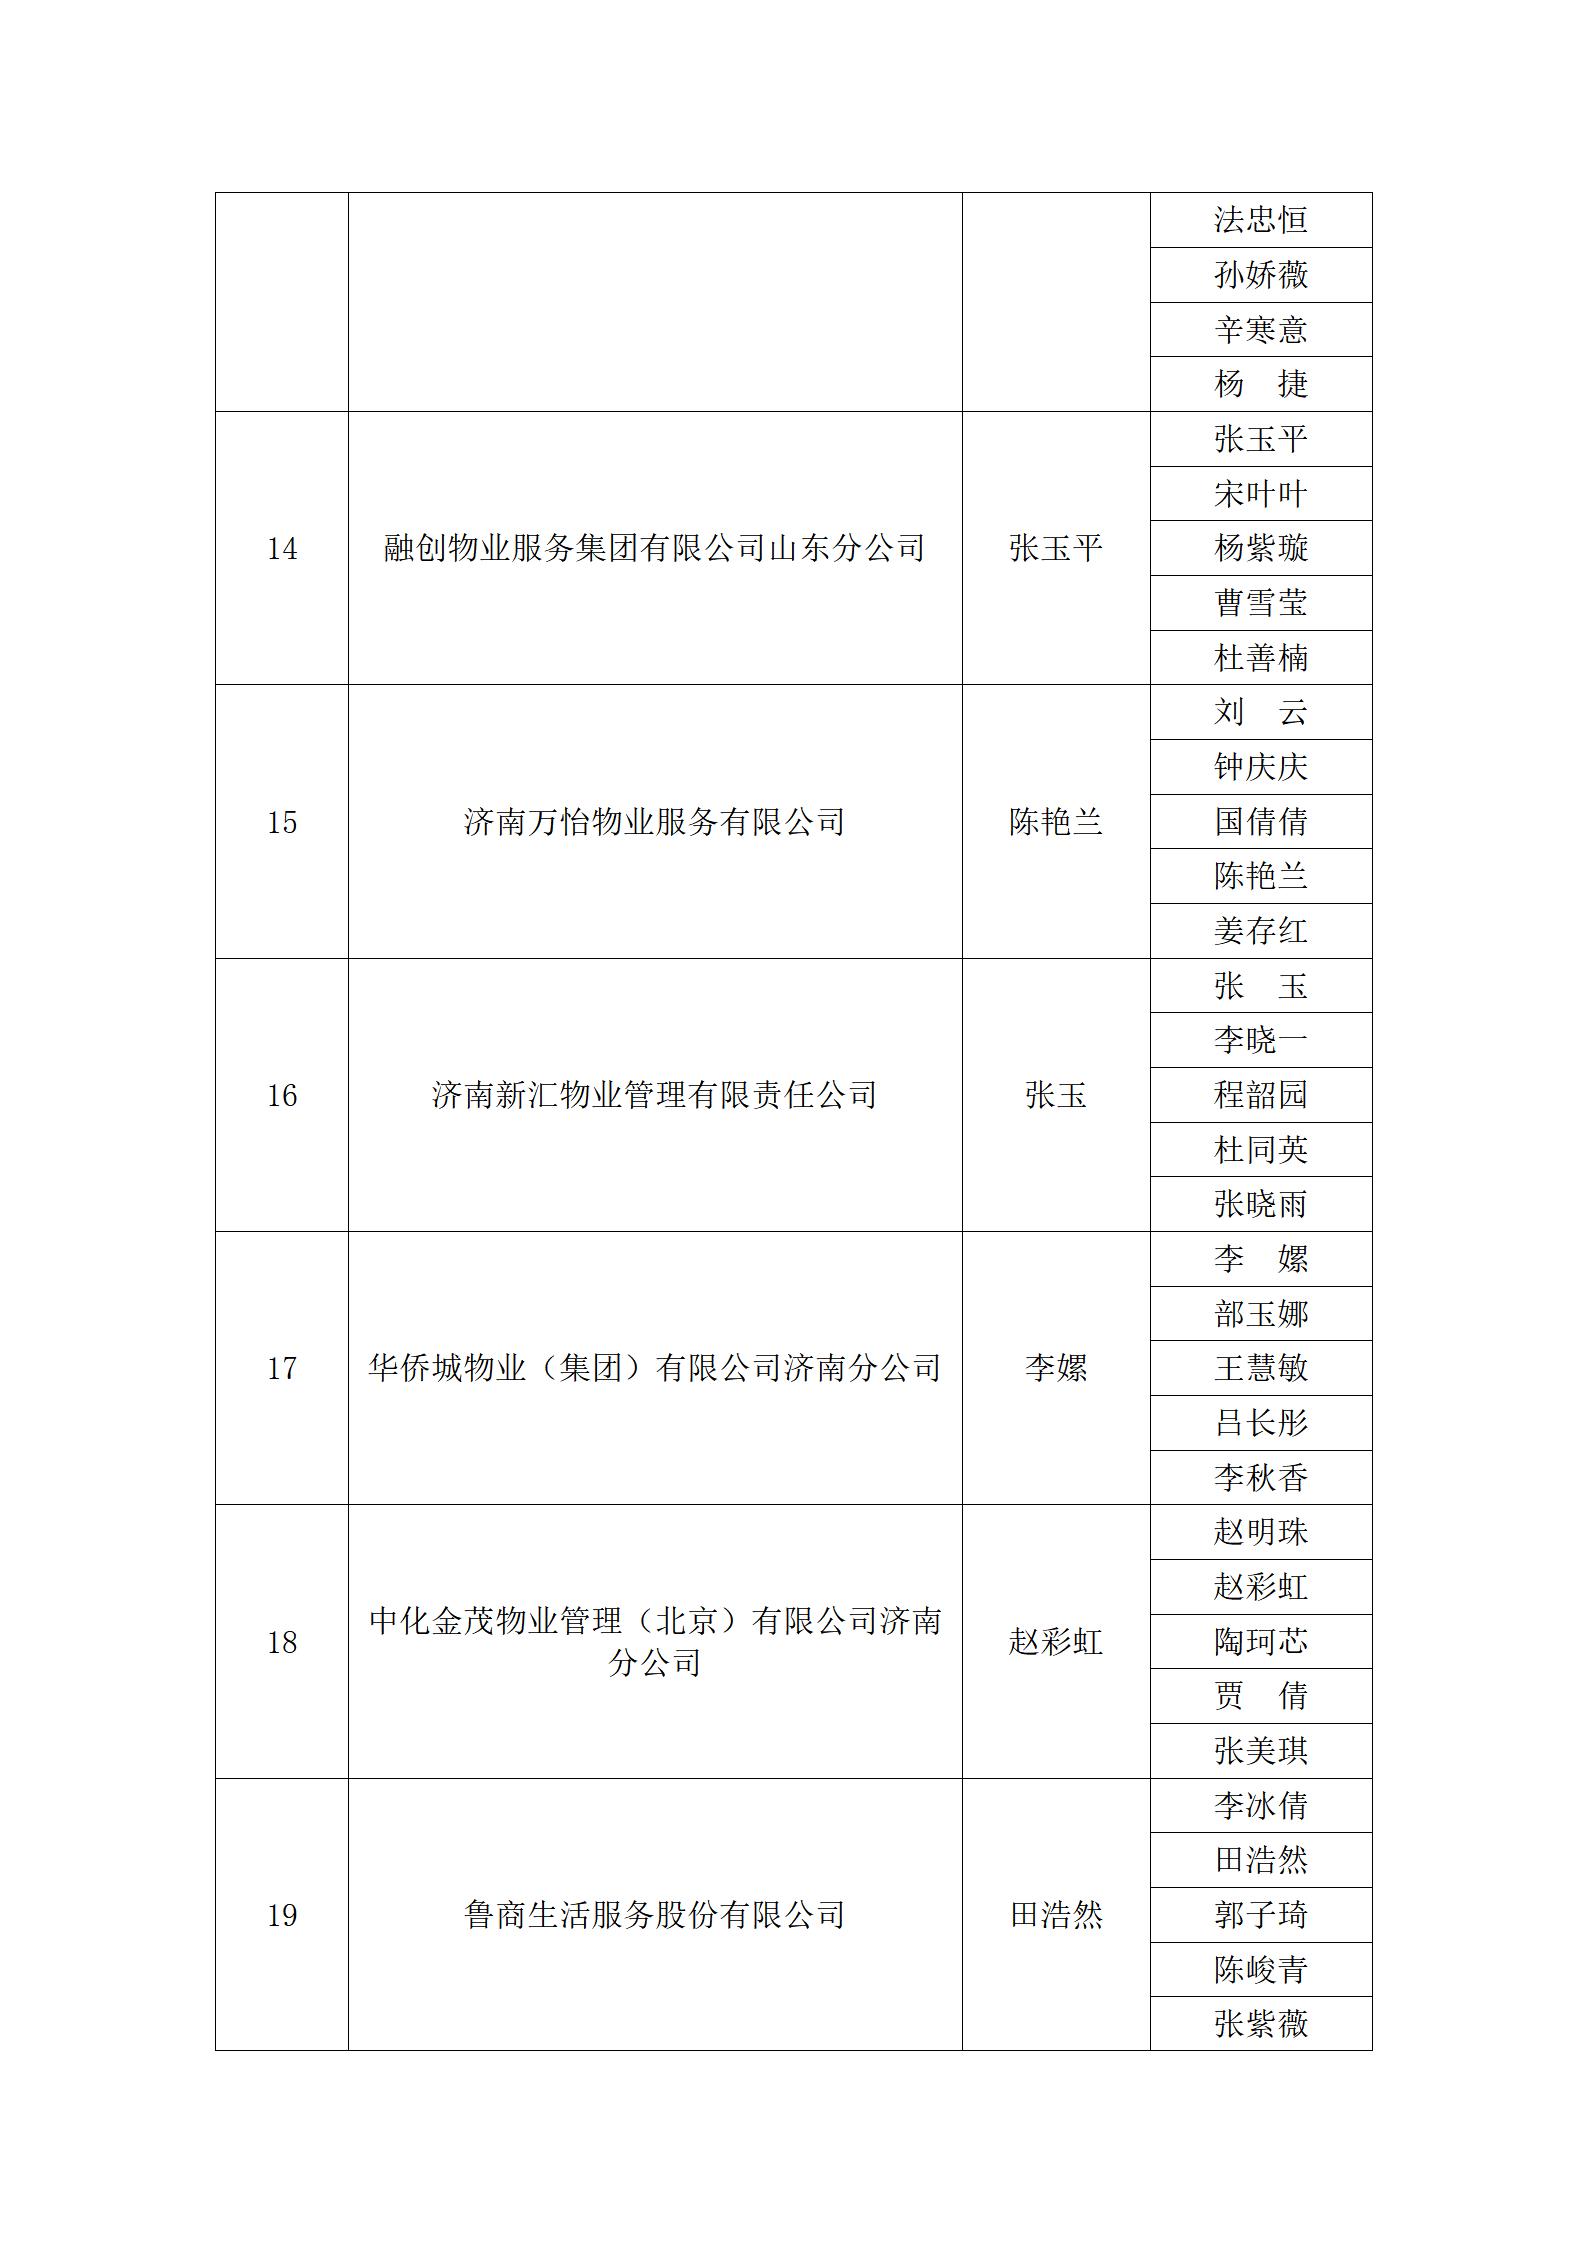 关于“明德杯”第六届济南市物业服务行业职业技能竞赛选手名单的公示_13